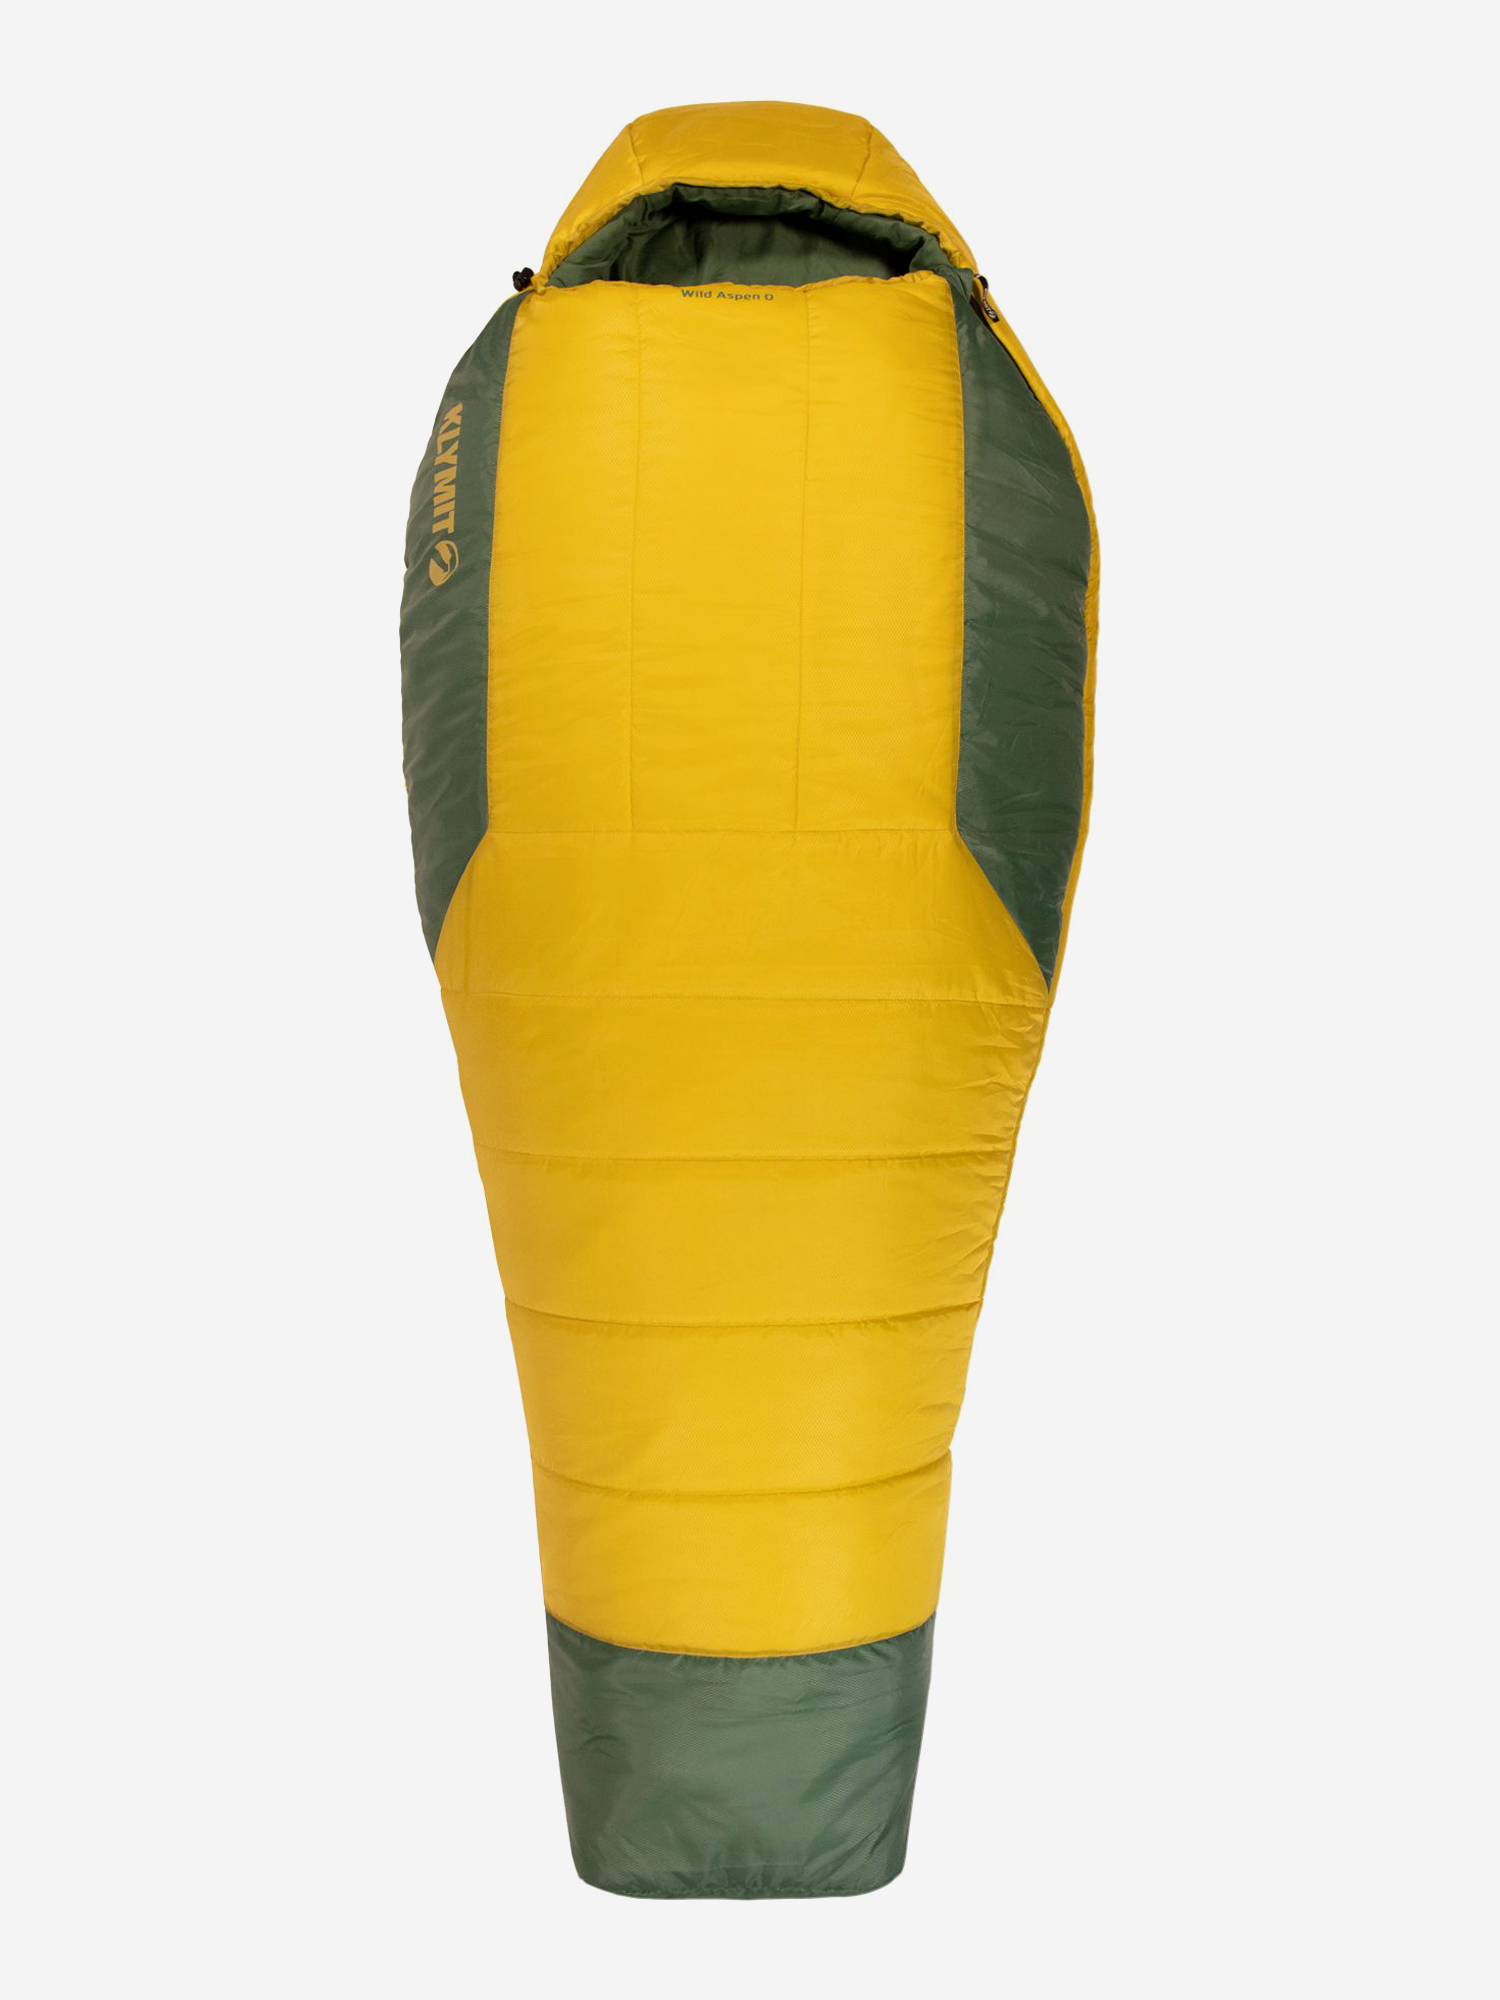 Спальный мешок KLYMIT Wild Aspen 0 Large (13WAYL00D) желто-зеленый, Желтый спальный мешок klymit wild aspen 0 large 13wayl00d желто зеленый желтый